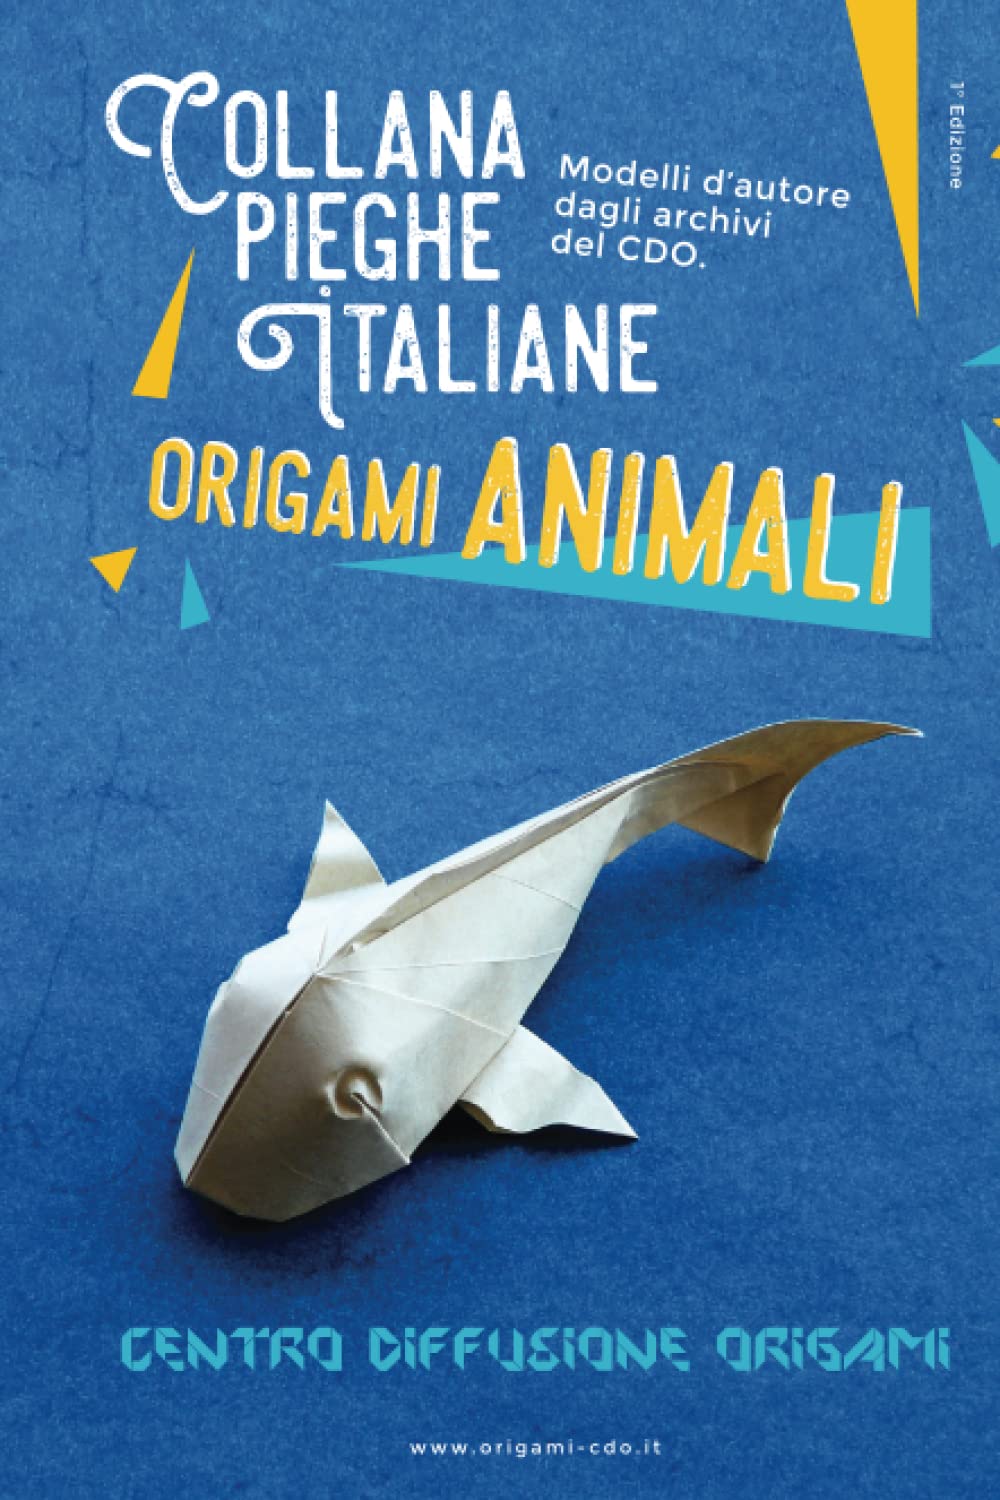 Collana pieghe Italiane - origami ANIMALI : page 150.